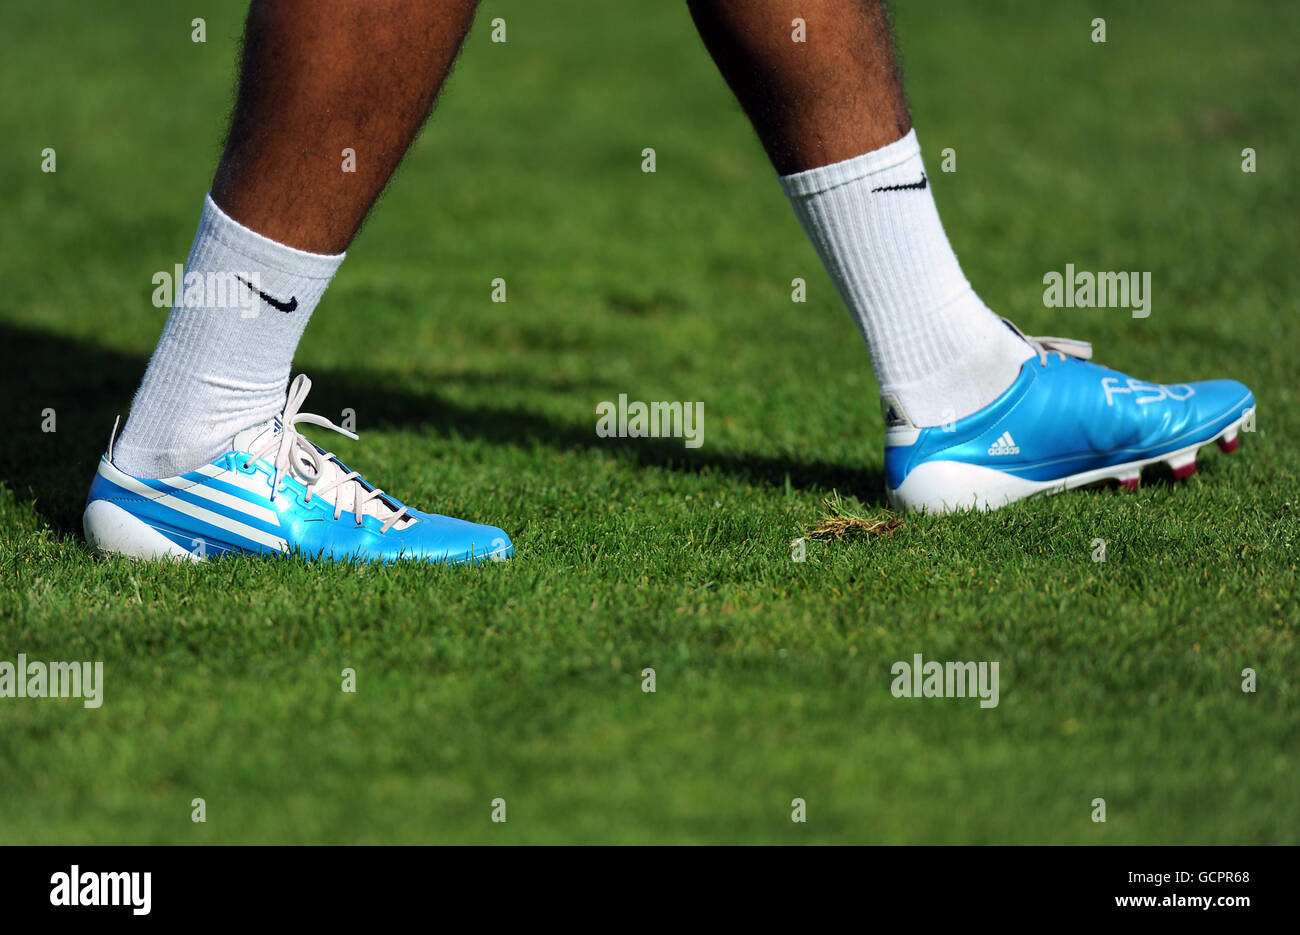 Allgemeine Ansicht eines Fußballers, der ein Paar Blau trägt Adidas F50  Fußballschuhe Stockfotografie - Alamy